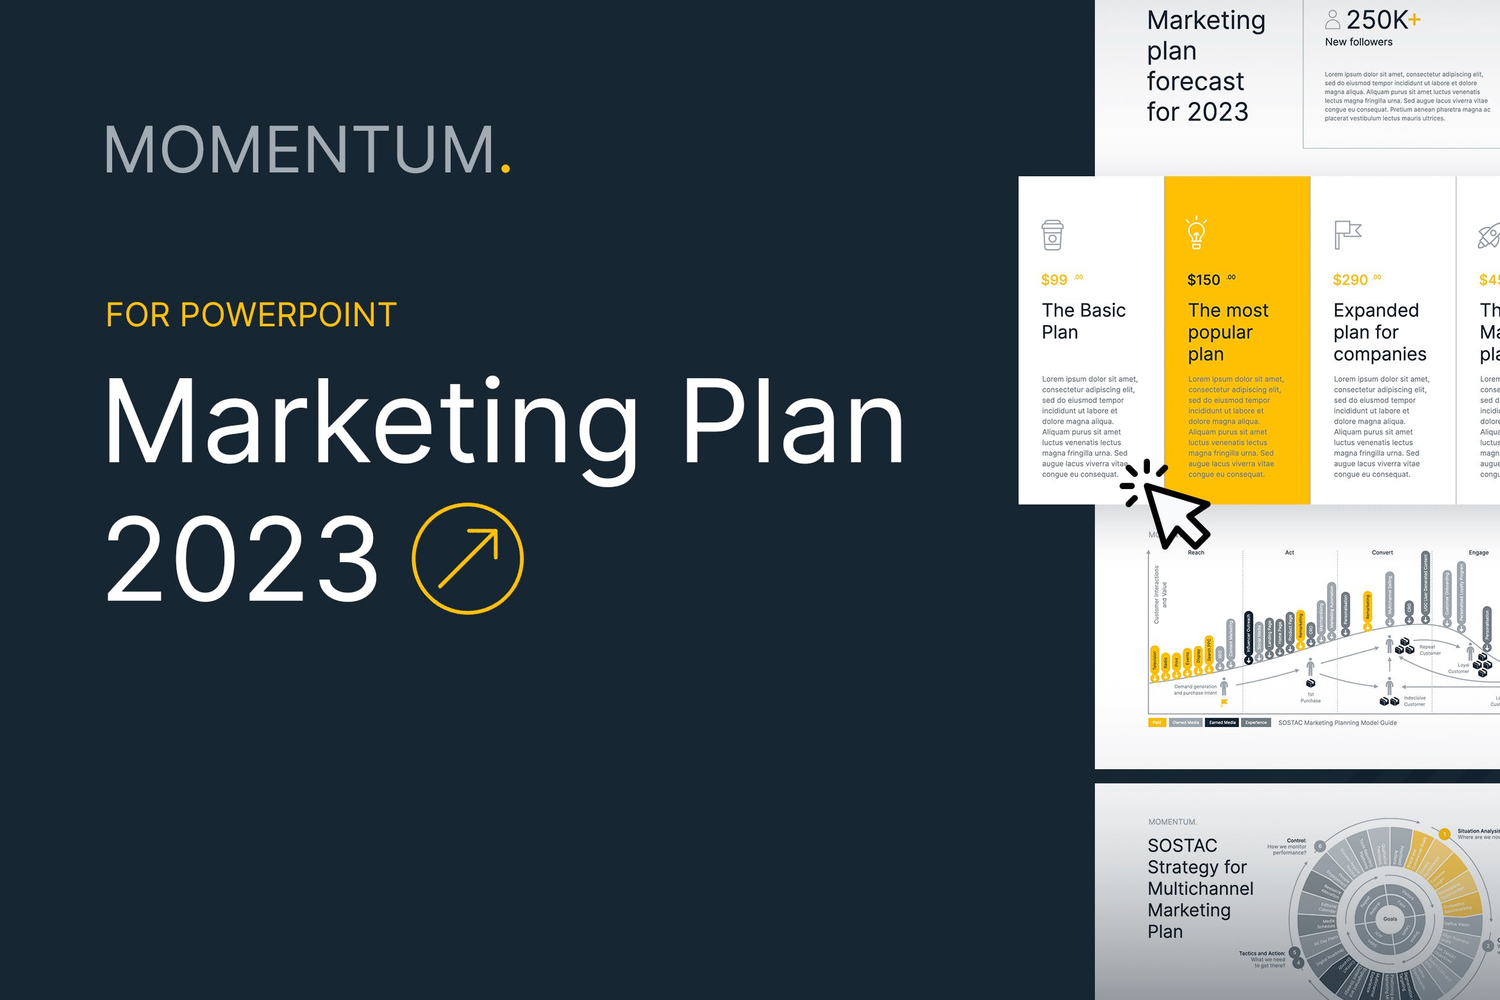 4410 年终总结会议报告数据图表统计PPT模板 Marketing Plan 2023 for PowerPoint@GOOODME.COM